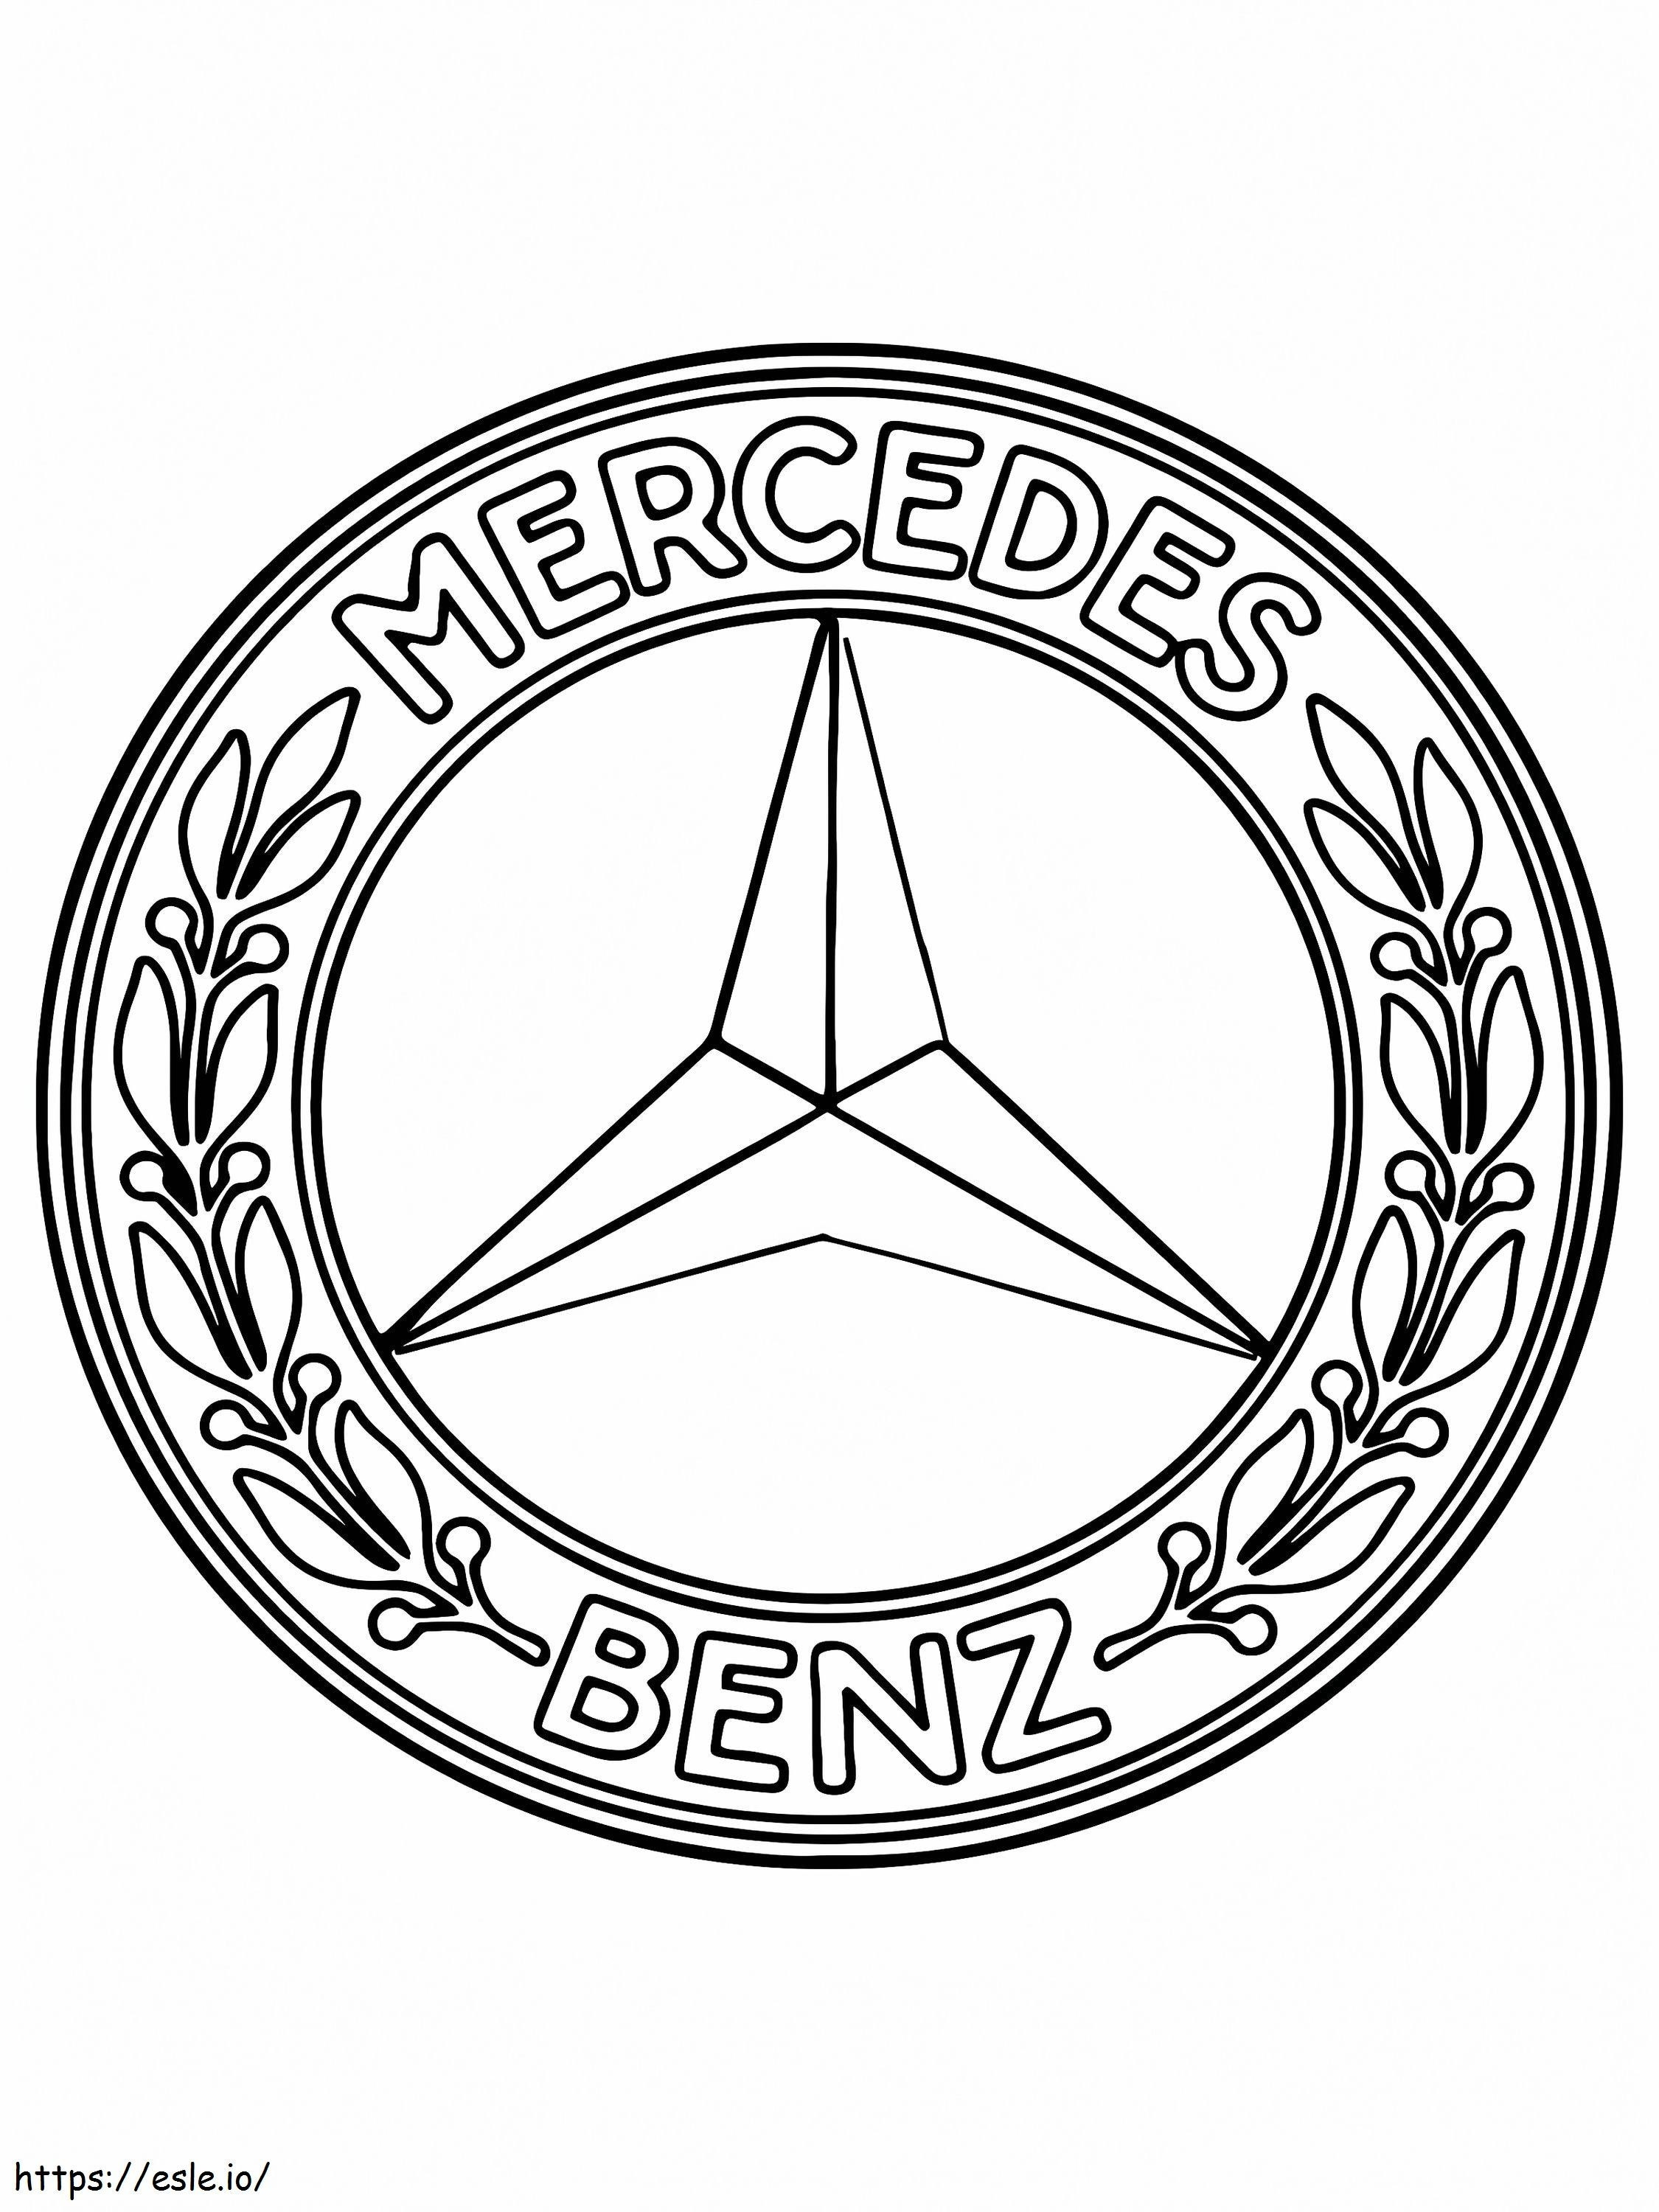 Logotipo do carro Mercedes Benz para colorir